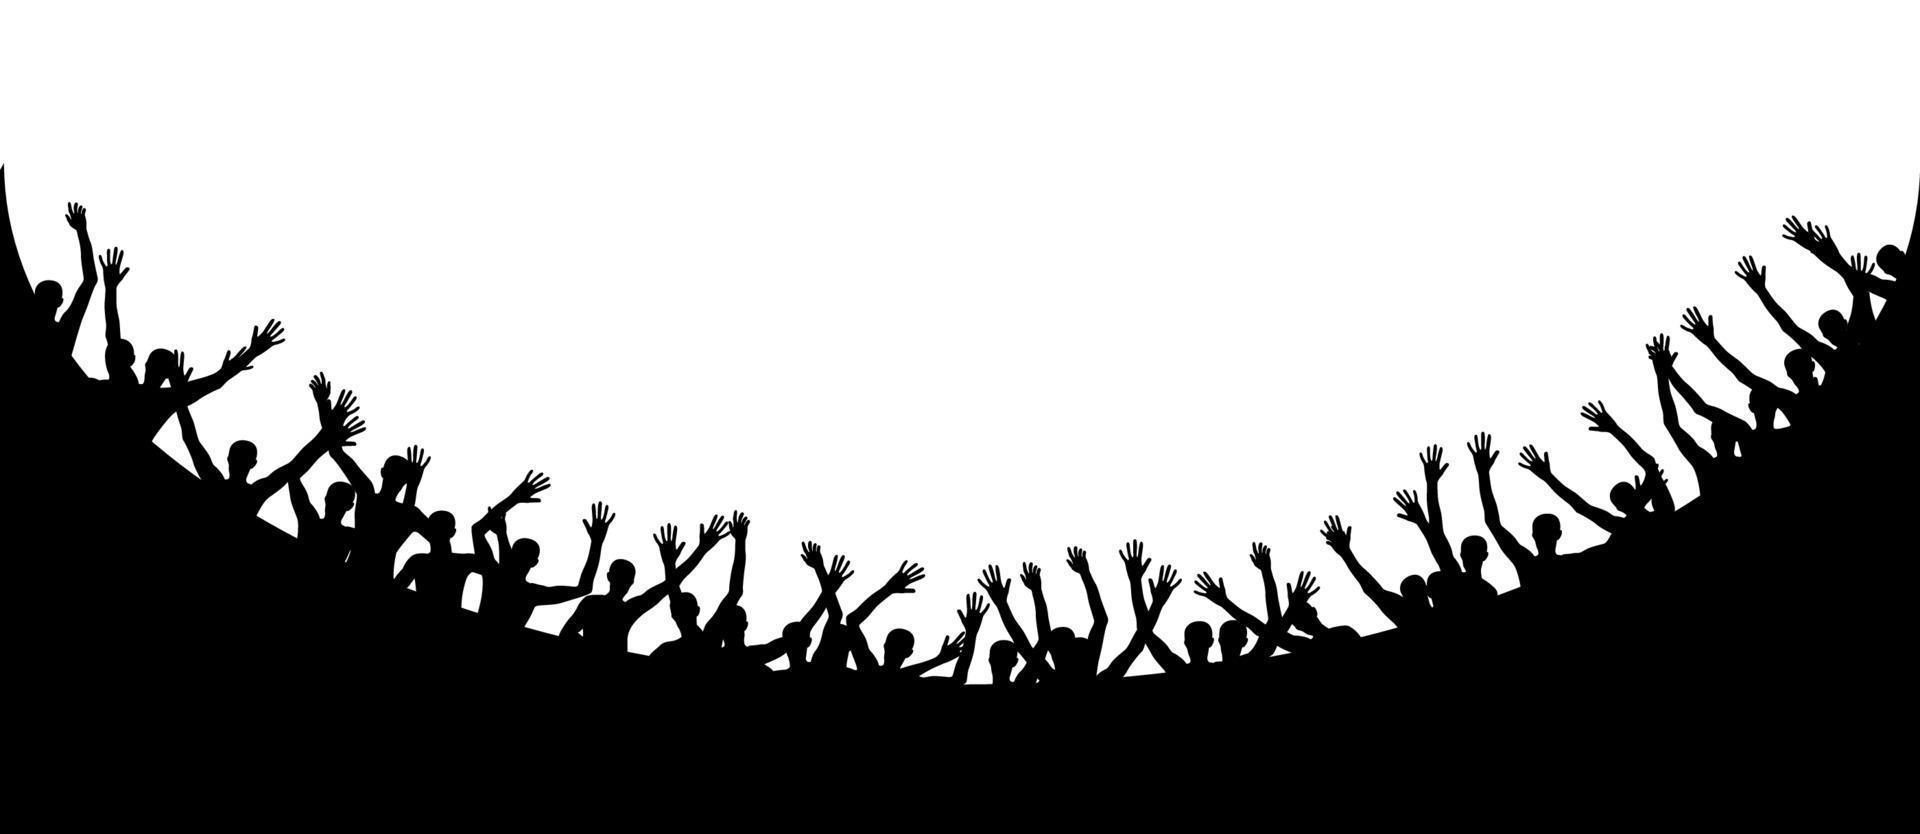 silhouettes en noir et blanc de sauter des gens heureux et joyeux. illustration vectorielle vecteur